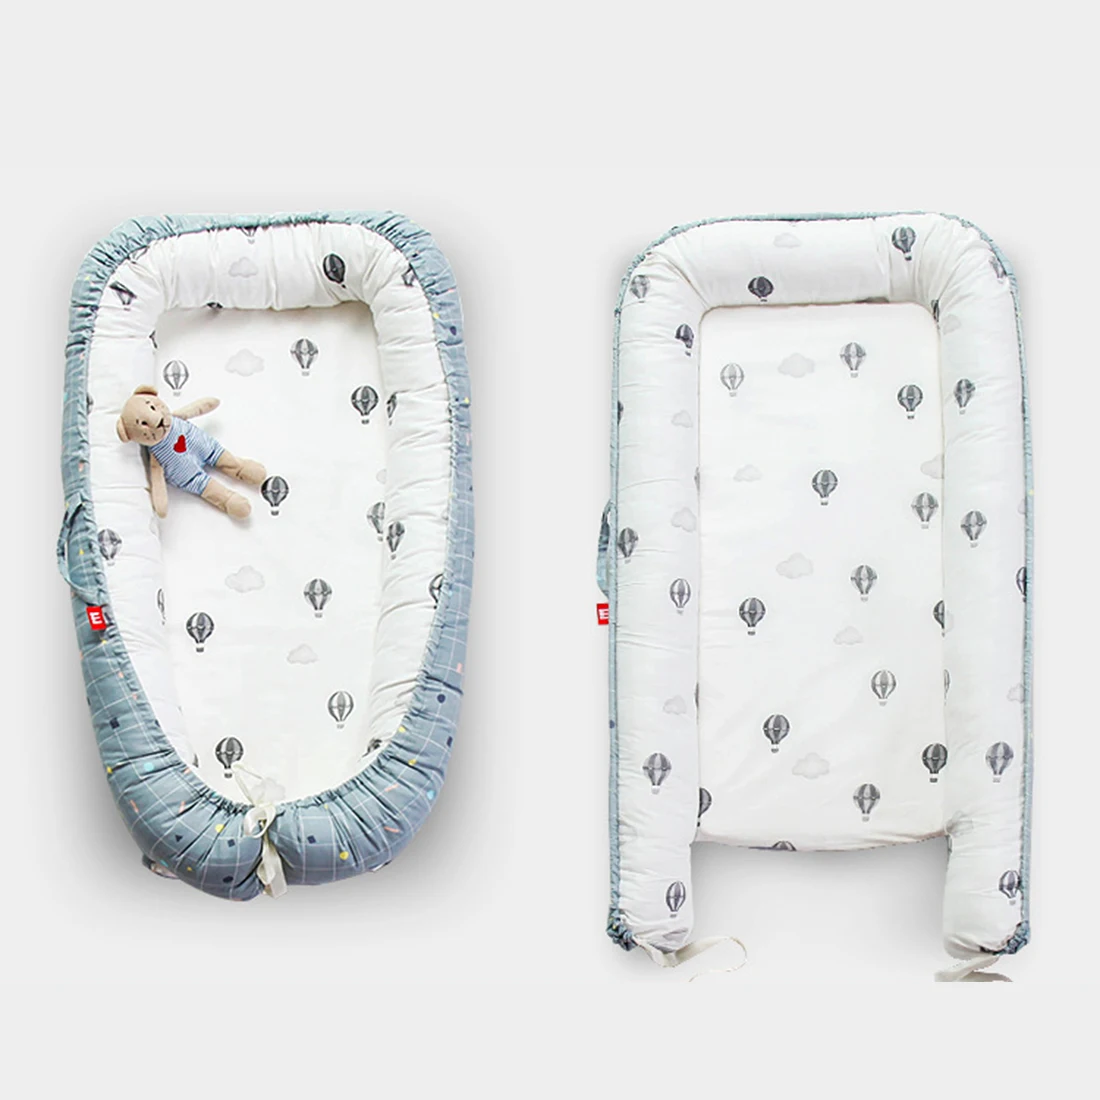 Скандинавское детское гнездо для кроватки, матрас, бионическая кровать с бампером, портативная детская кроватка для путешествий, съемная хлопковая детская колыбель